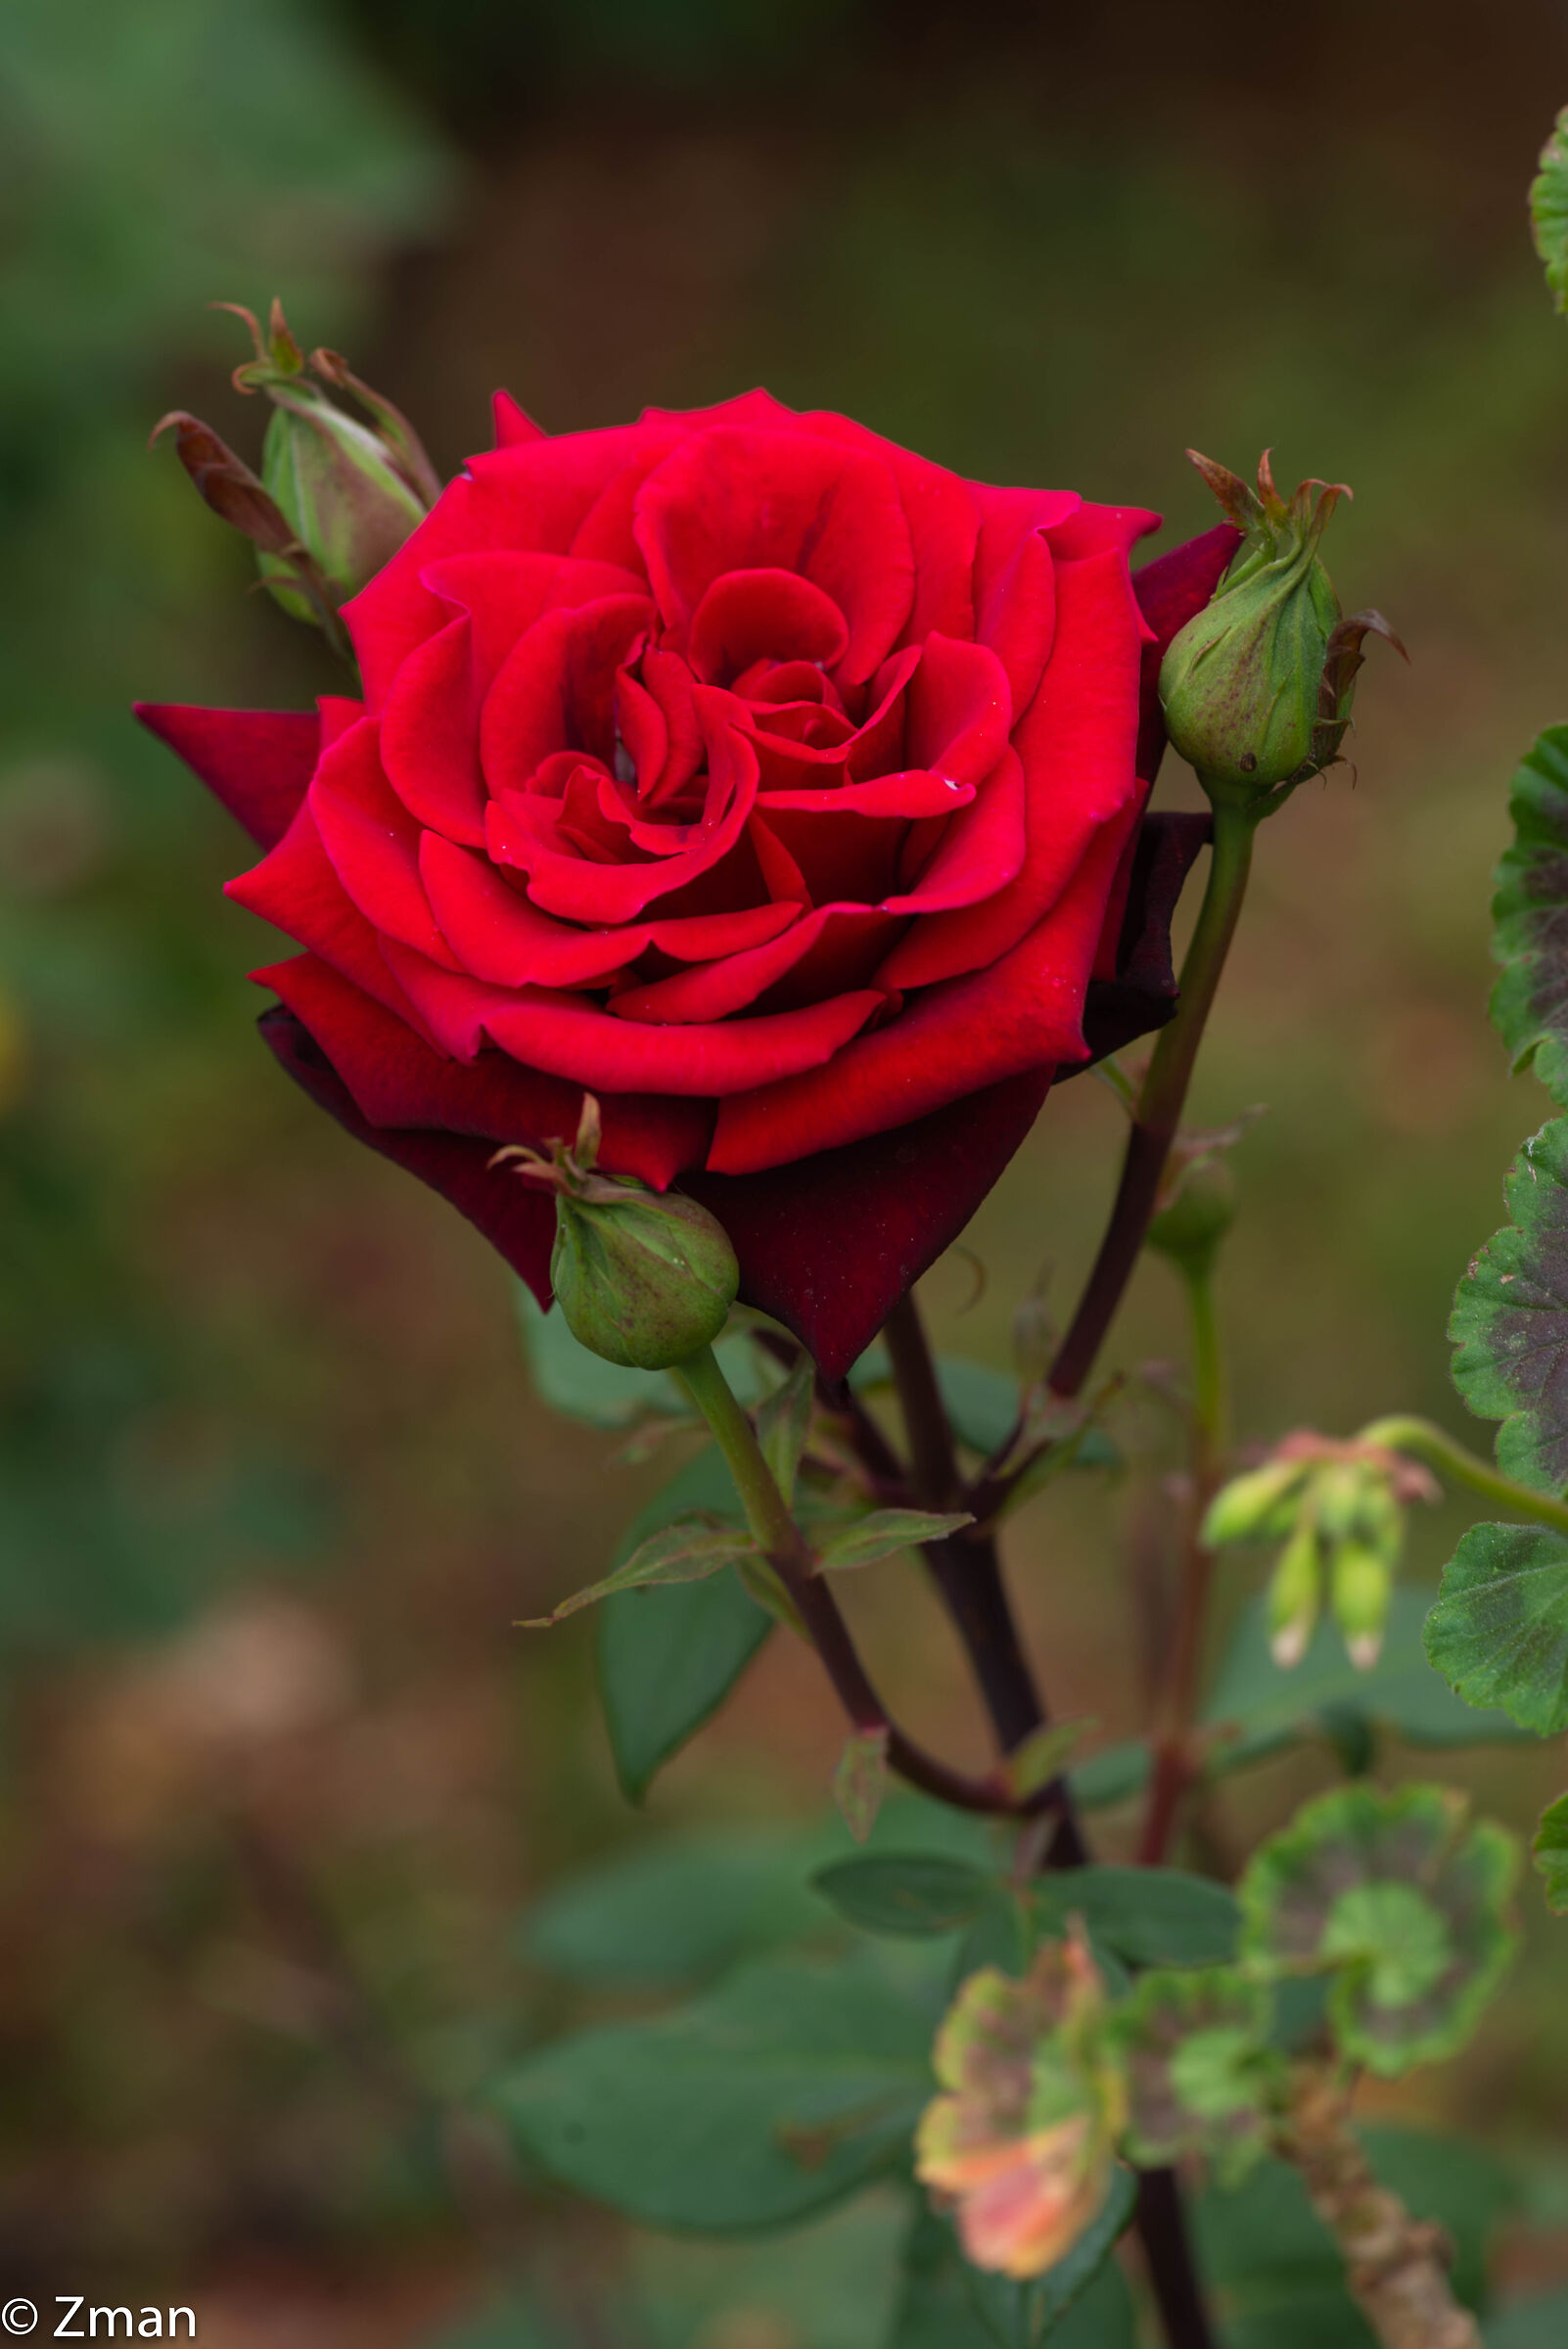 Rosa rossa rossa...